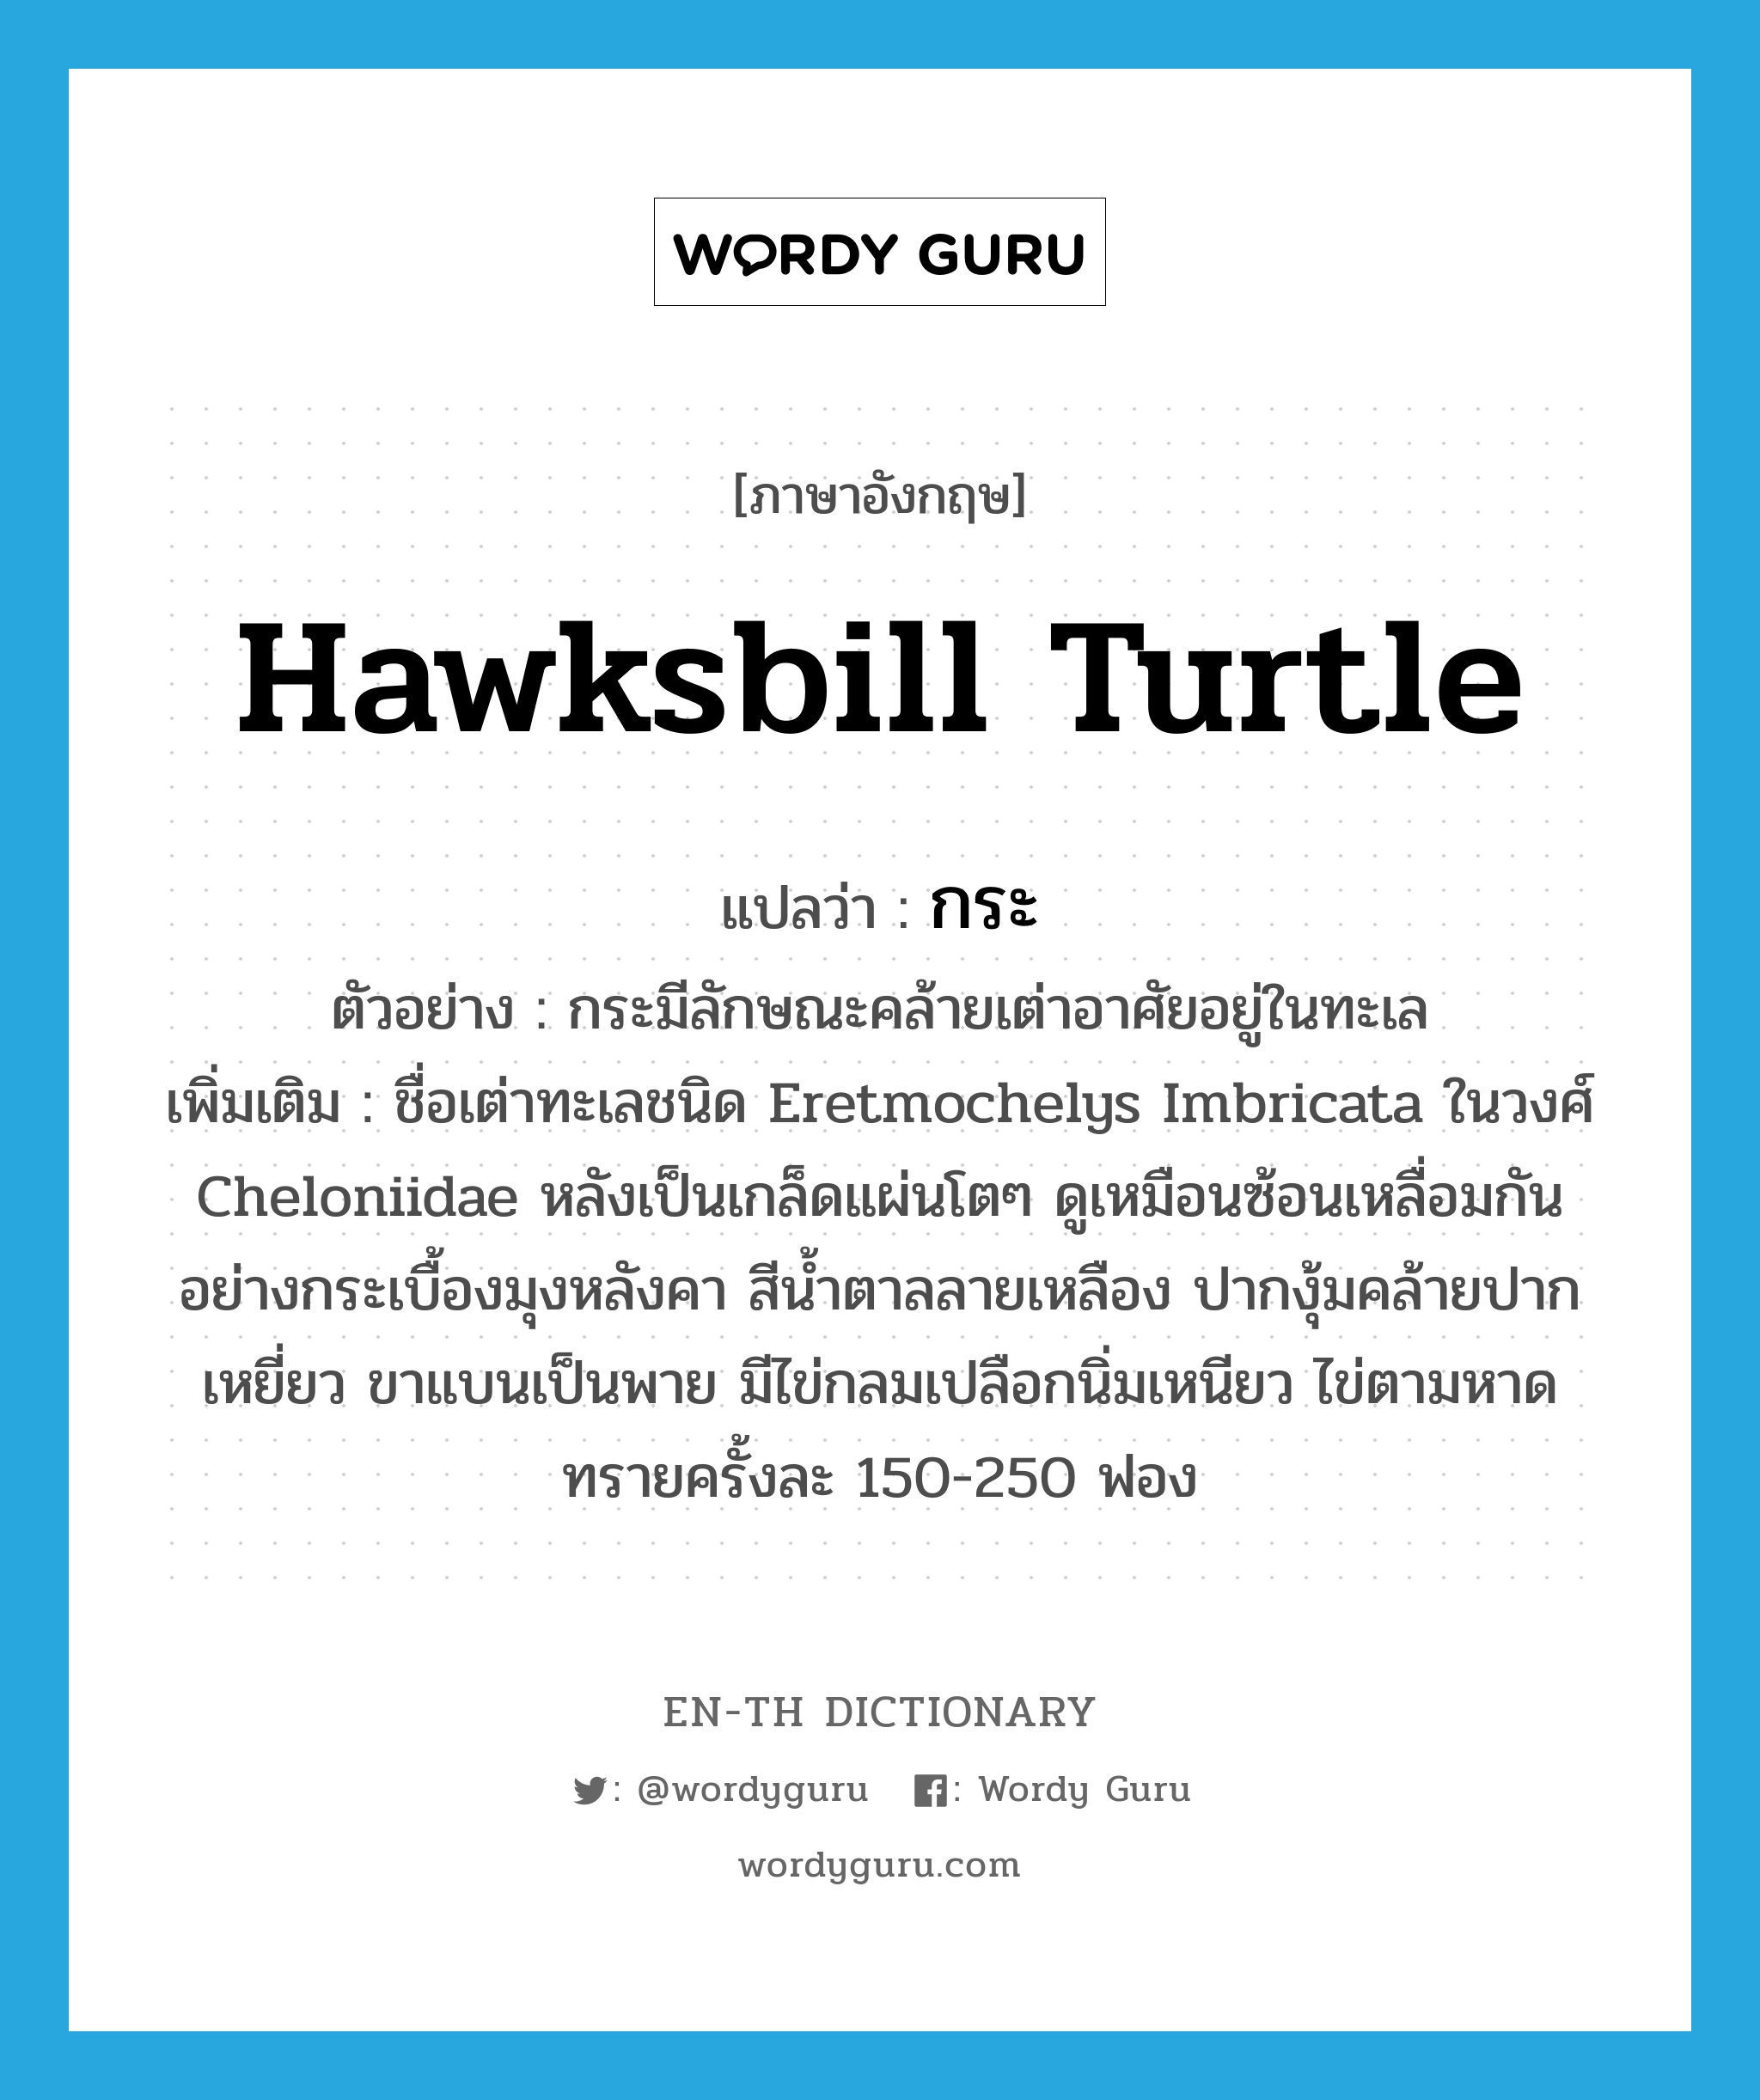 hawksbill turtle แปลว่า?, คำศัพท์ภาษาอังกฤษ hawksbill turtle แปลว่า กระ ประเภท N ตัวอย่าง กระมีลักษณะคล้ายเต่าอาศัยอยู่ในทะเล เพิ่มเติม ชื่อเต่าทะเลชนิด Eretmochelys Imbricata ในวงศ์ Cheloniidae หลังเป็นเกล็ดแผ่นโตๆ ดูเหมือนซ้อนเหลื่อมกันอย่างกระเบื้องมุงหลังคา สีน้ำตาลลายเหลือง ปากงุ้มคล้ายปากเหยี่ยว ขาแบนเป็นพาย มีไข่กลมเปลือกนิ่มเหนียว ไข่ตามหาดทรายครั้งละ 150-250 ฟอง หมวด N